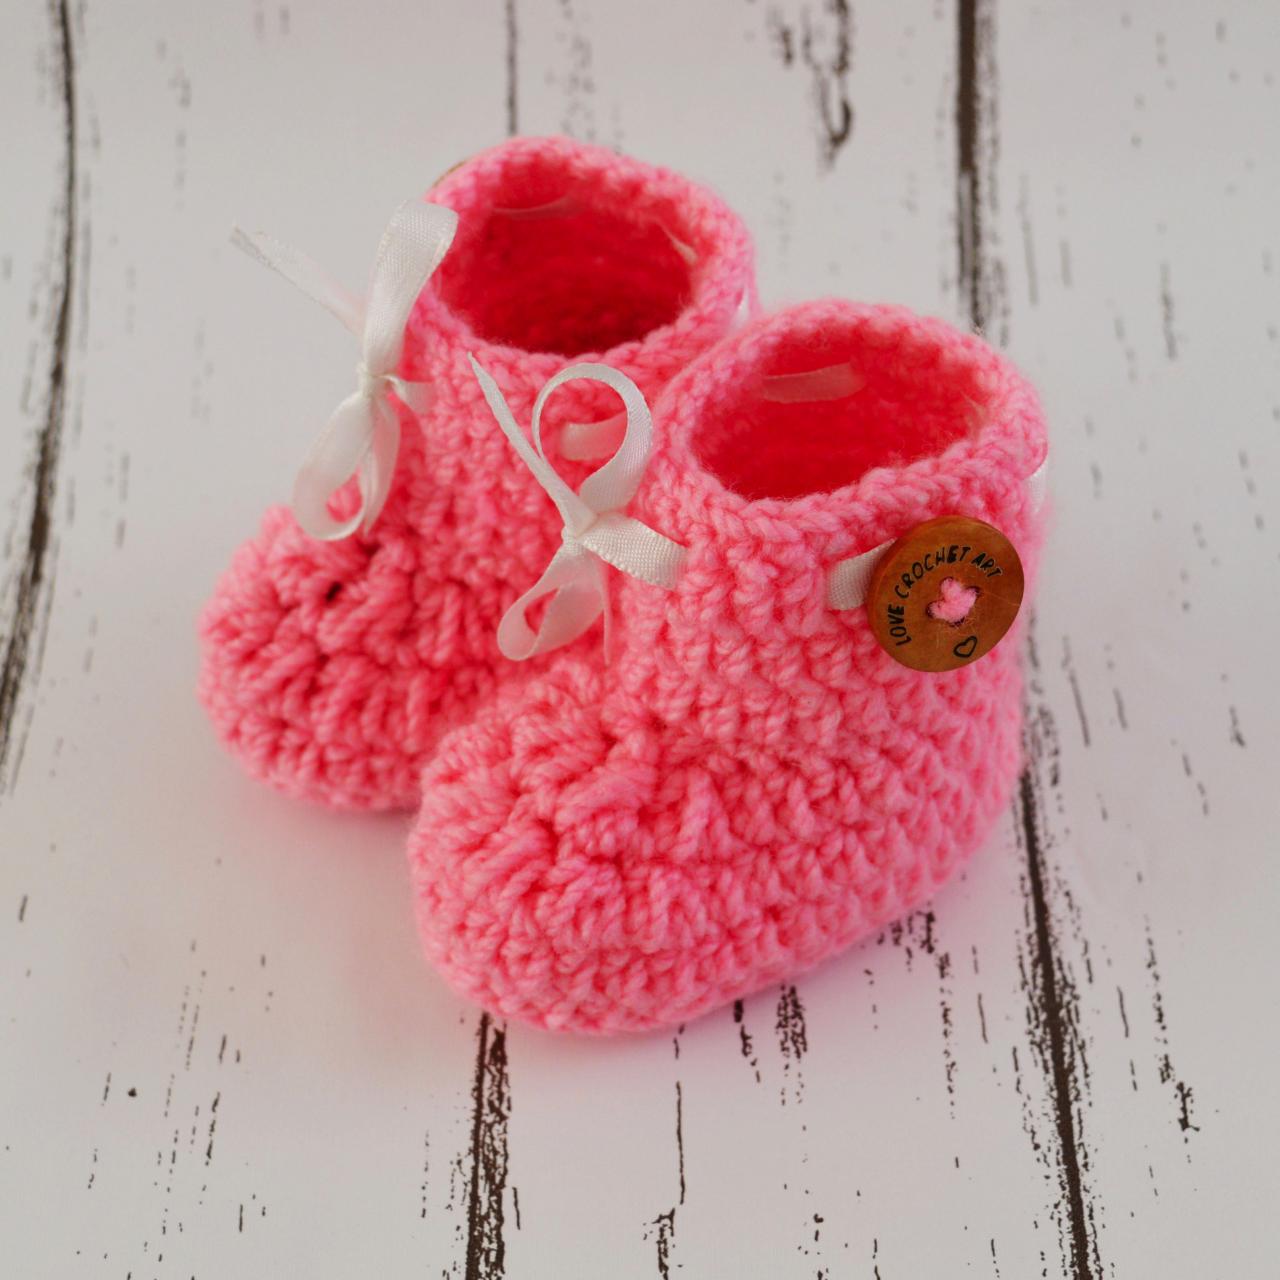 Crochet Baby Booties Woolen Booties, Newborn Infant Booties, Baptism Booties - Light Pink